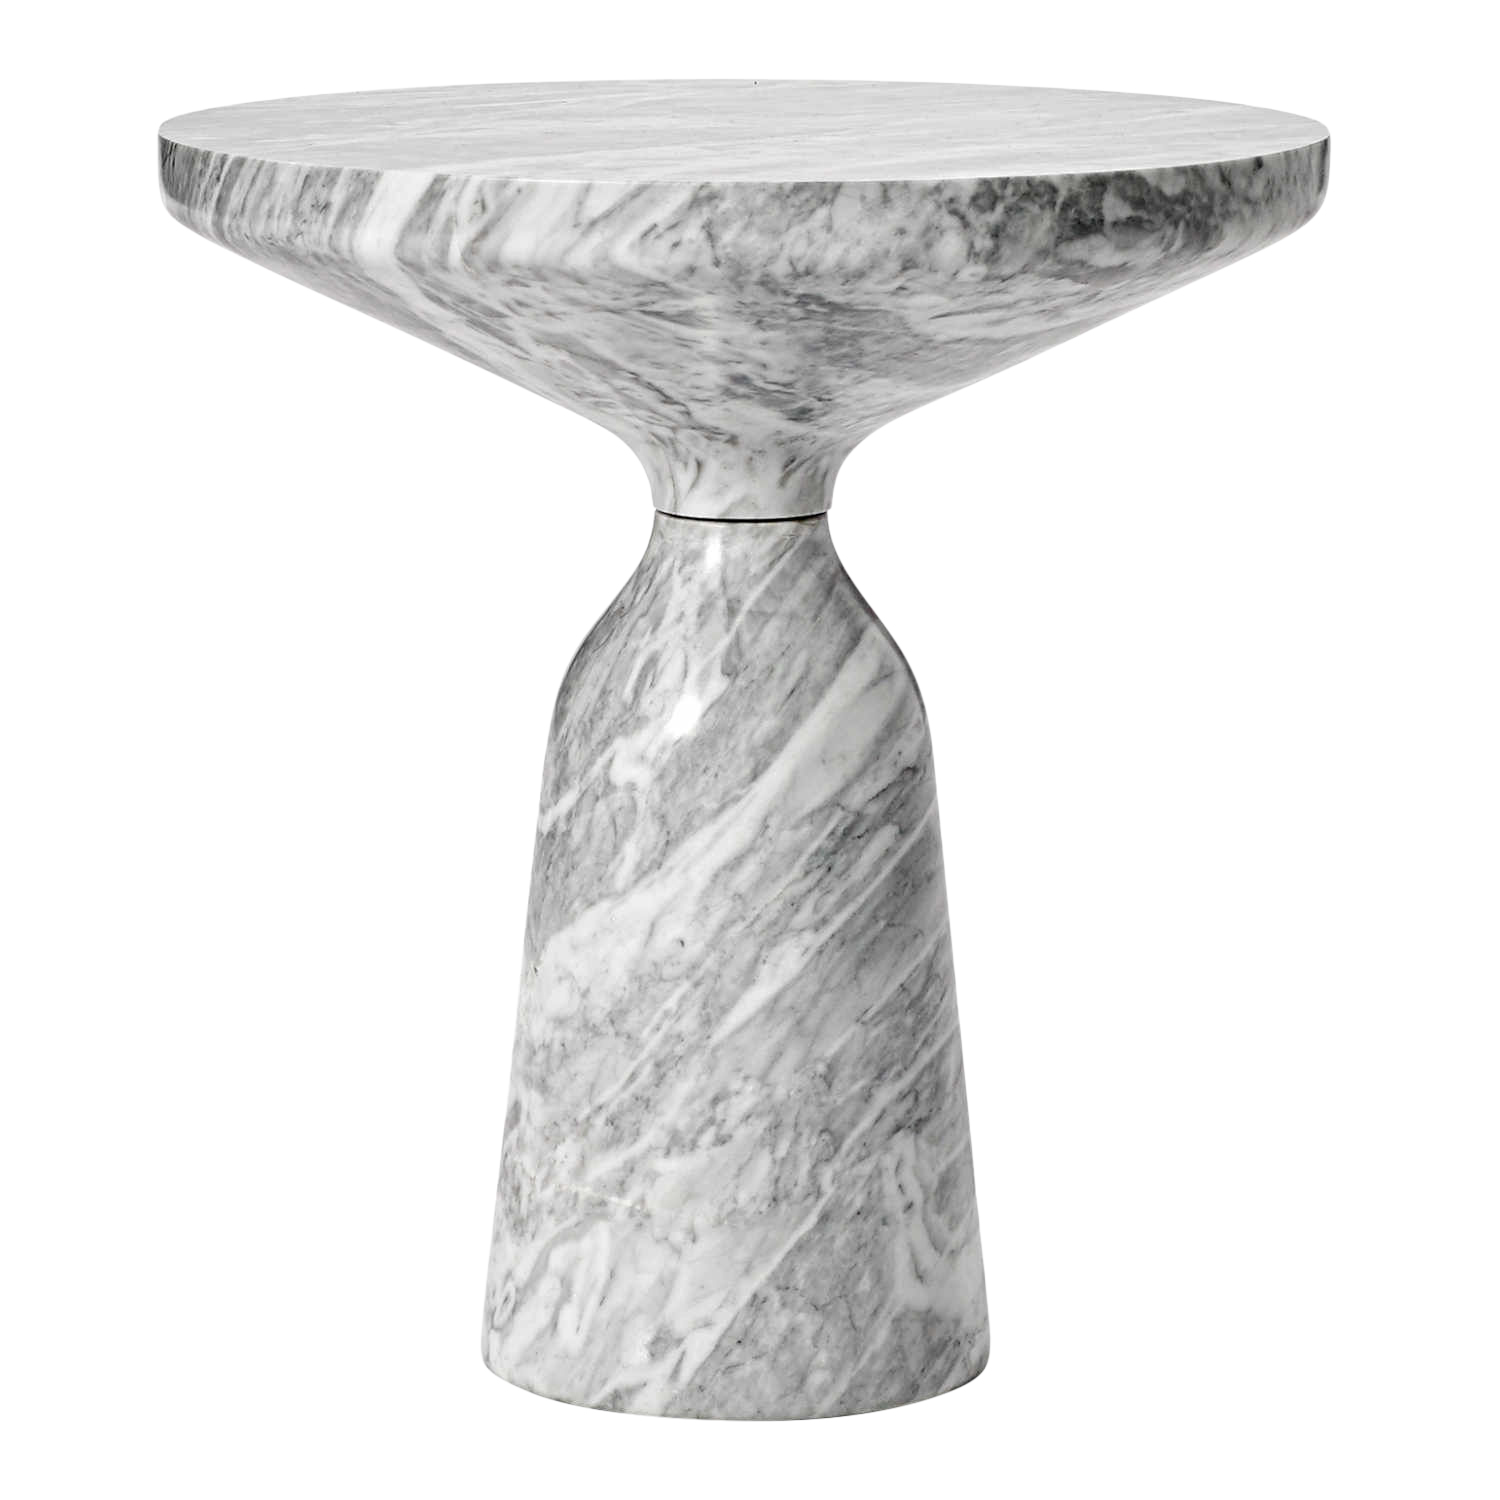 Bell Side Table Marble Beistelltisch, Ausführung marmor, bianco carrara, Oberfläche matt von ClassiCon